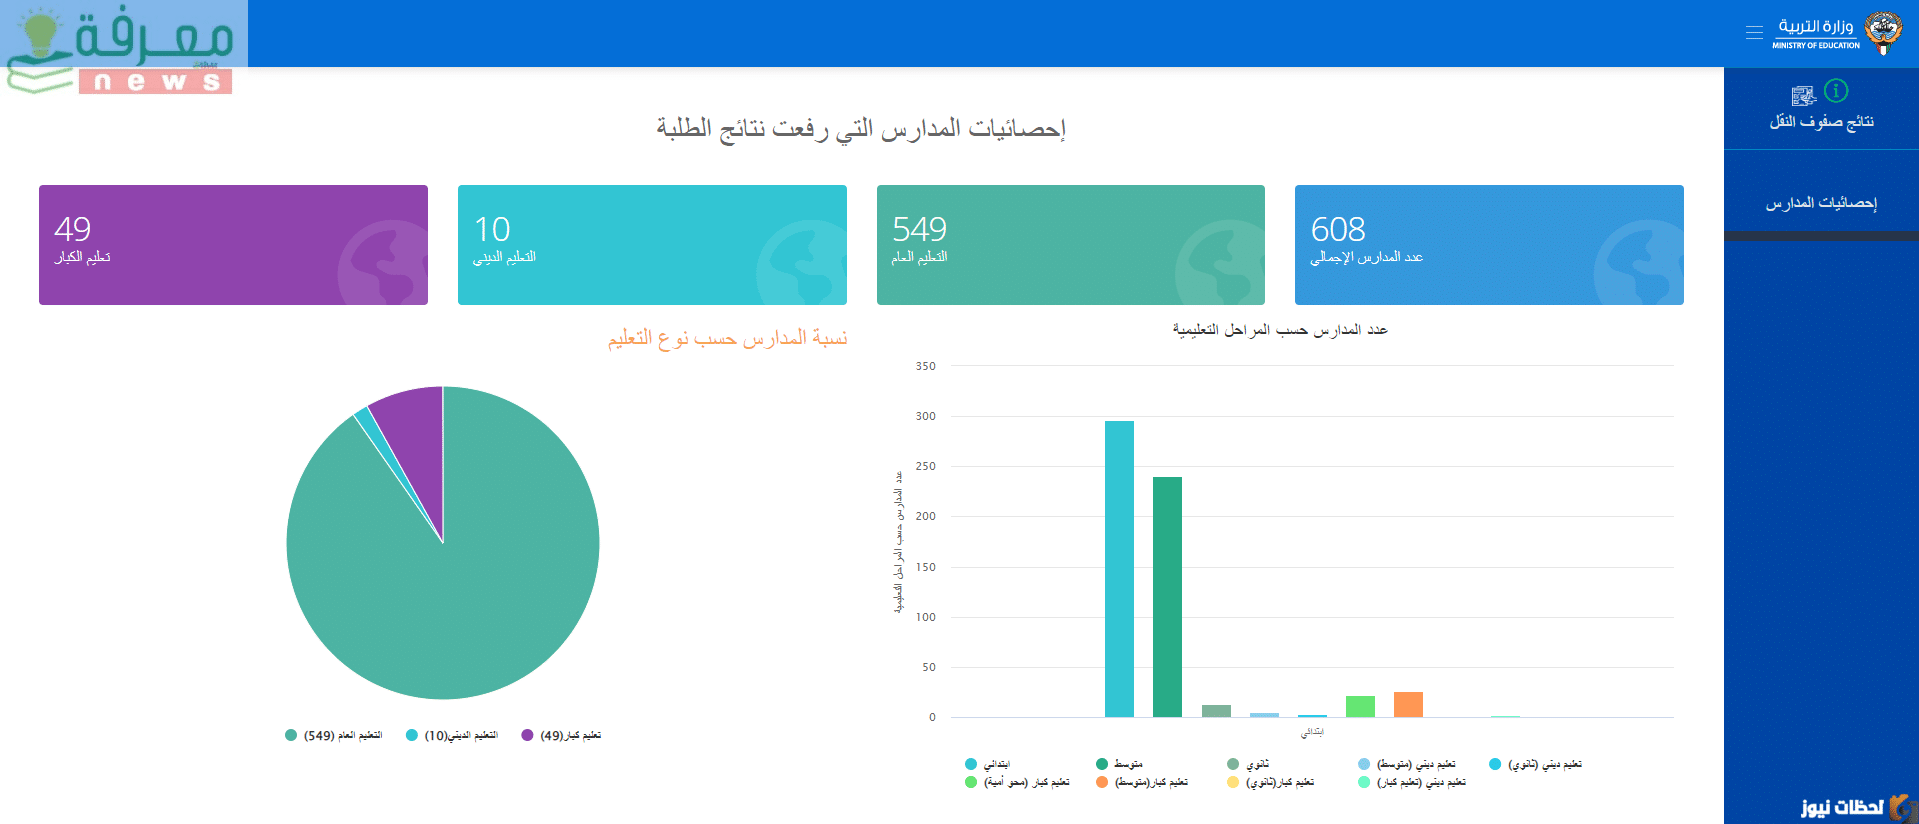 المدارس التي رفعت النتائج الكويت الأحمدي